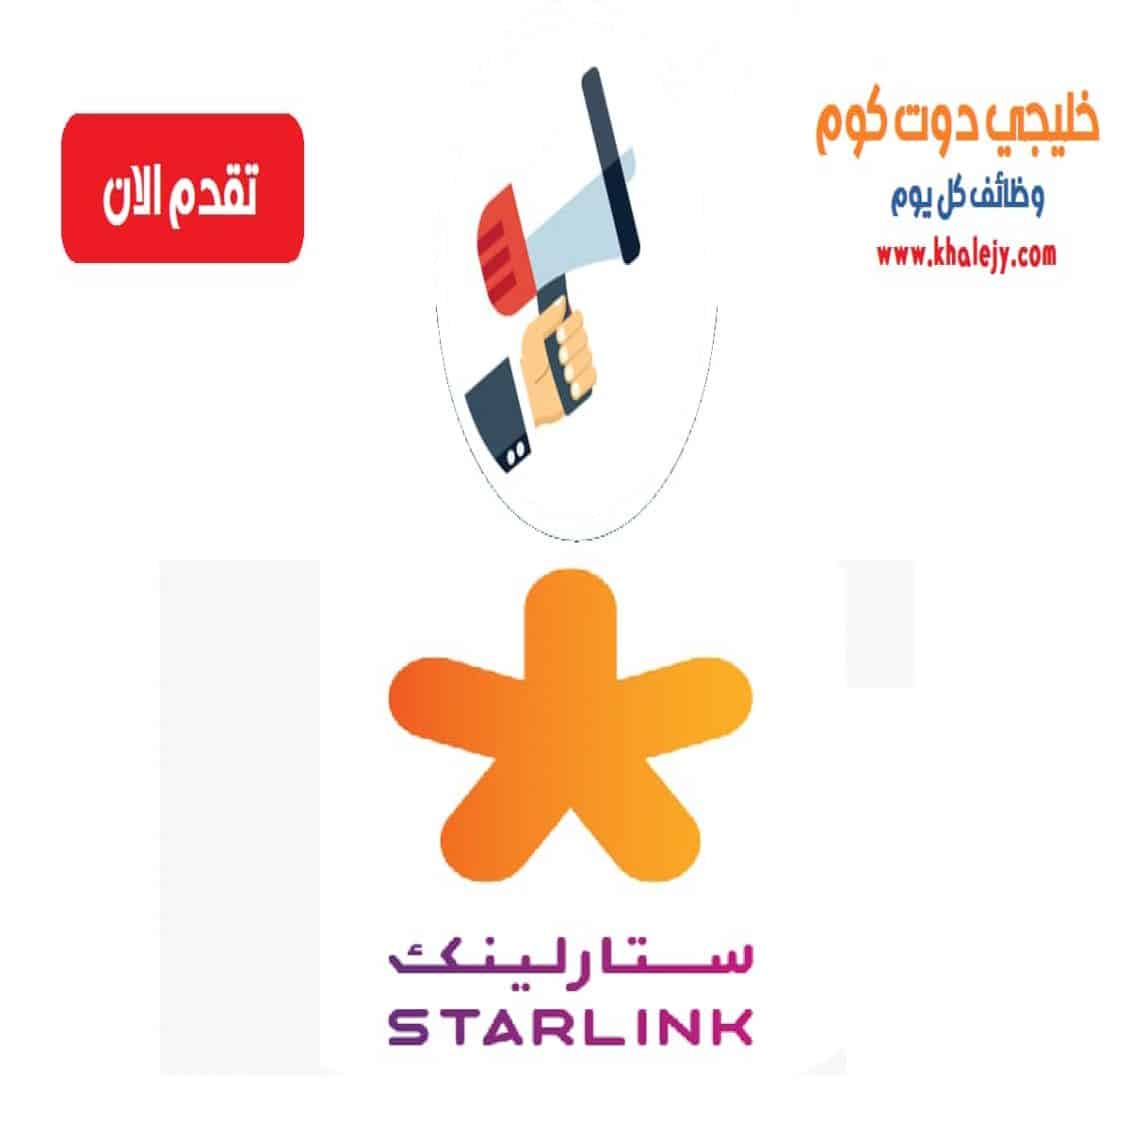 وظائف في قطر للمواطنين والاجانب بشركة ستارلينك